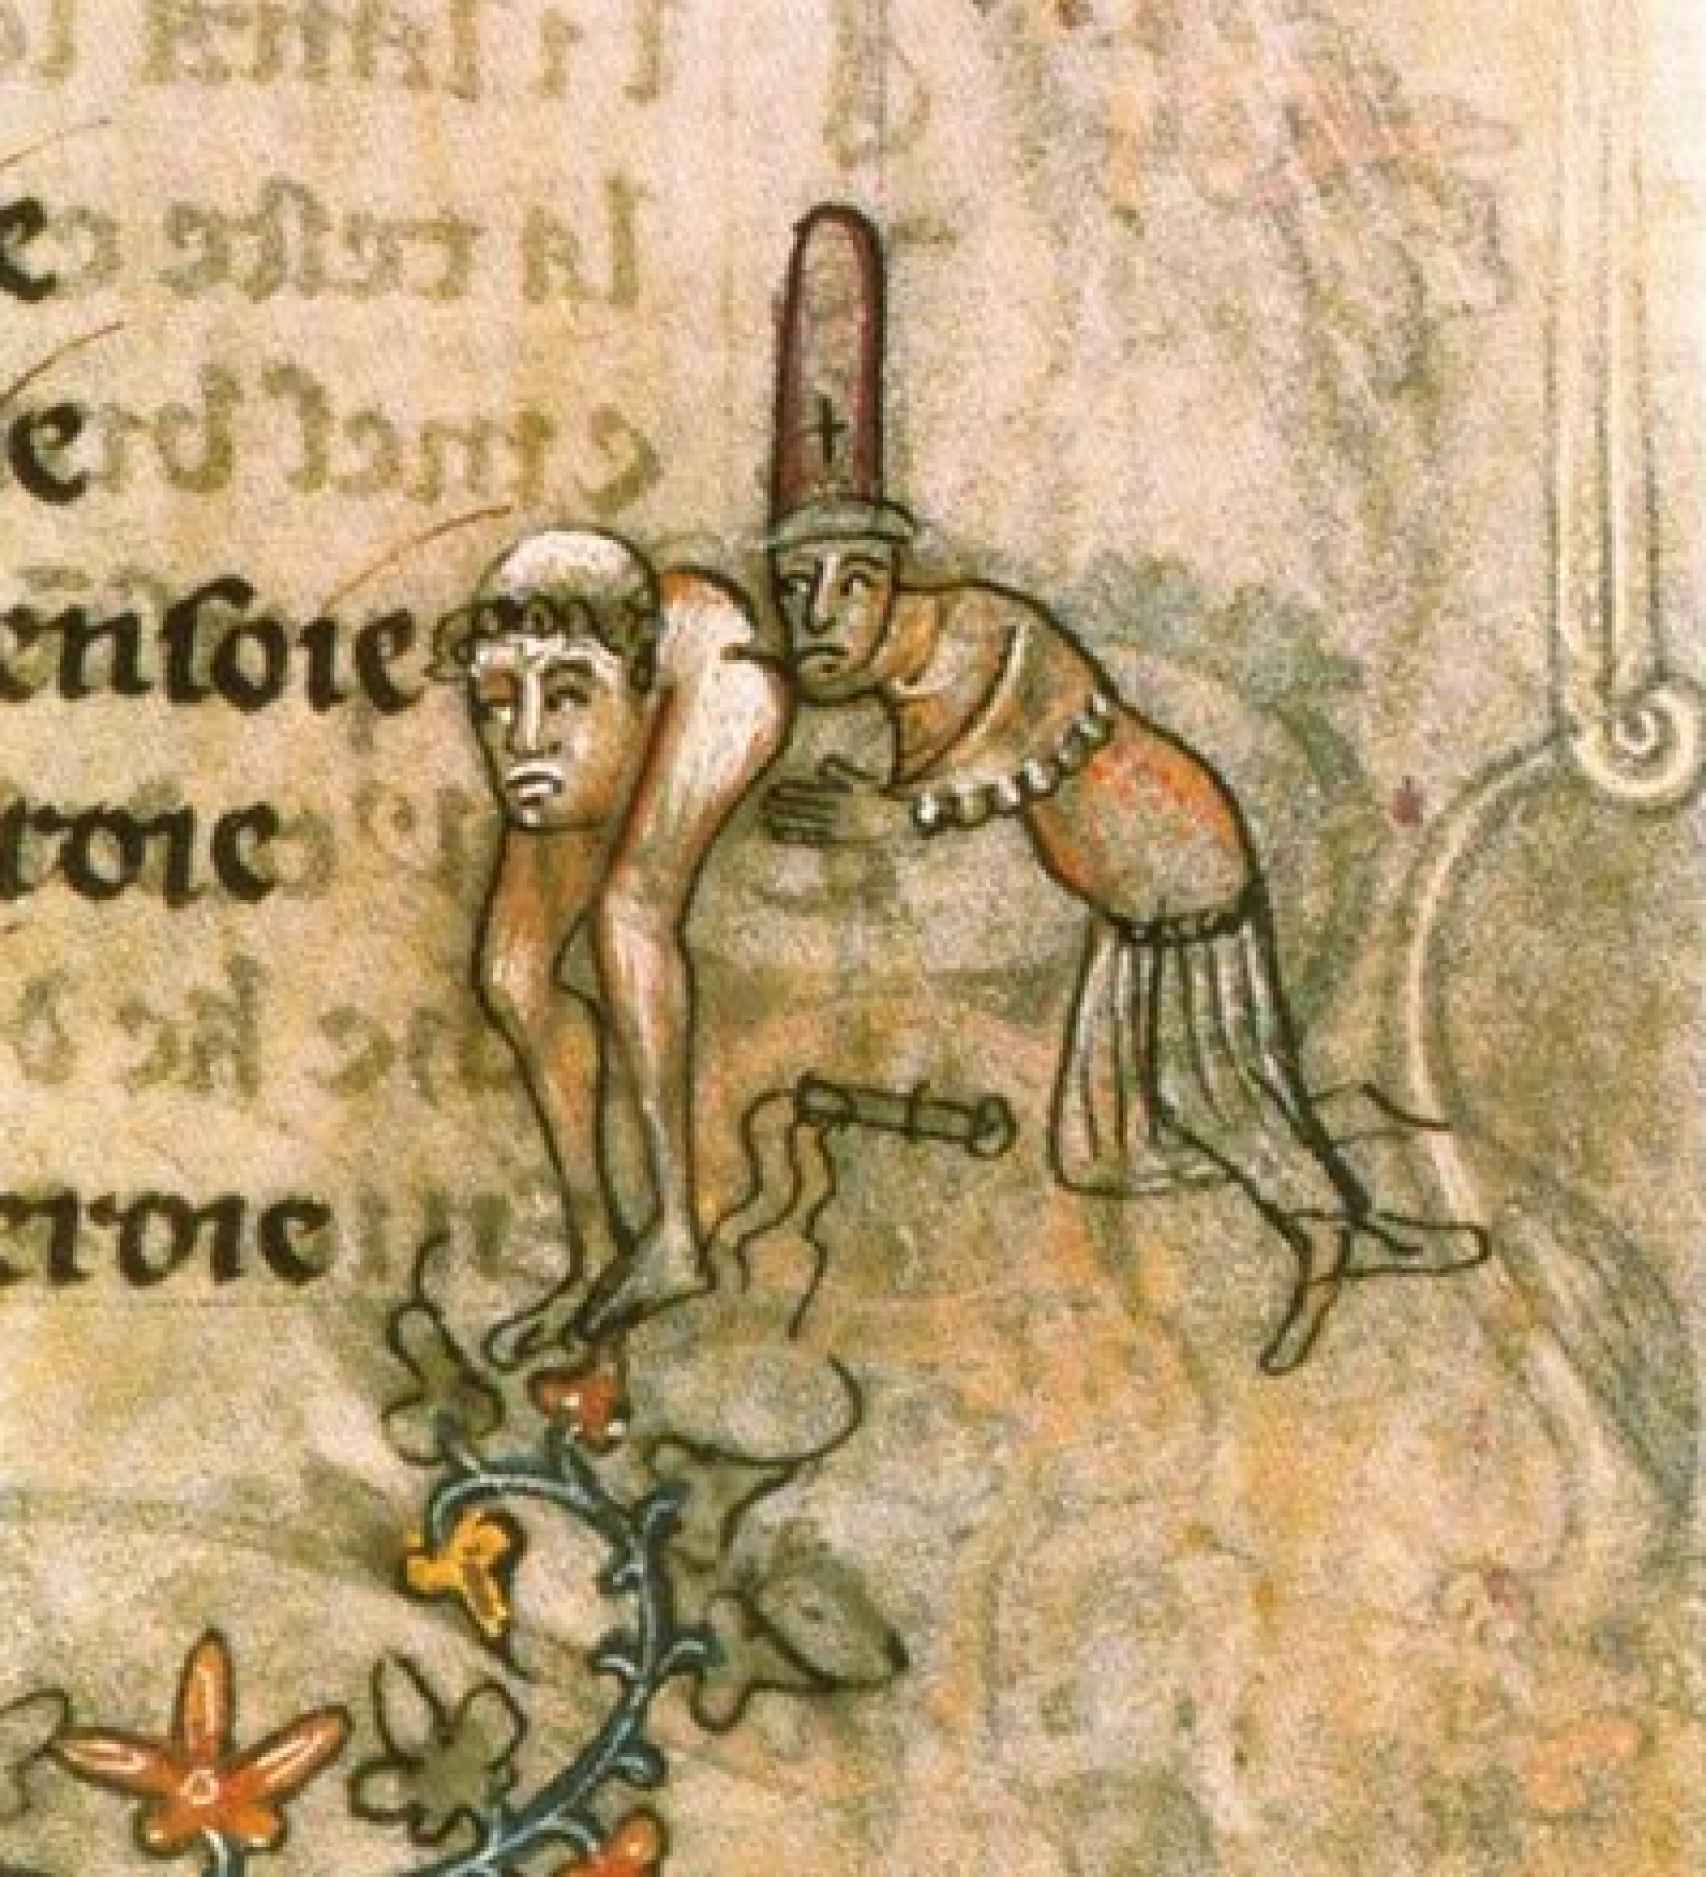 Manuscrito medieval en el que se acusa a los templarios de sodomía.